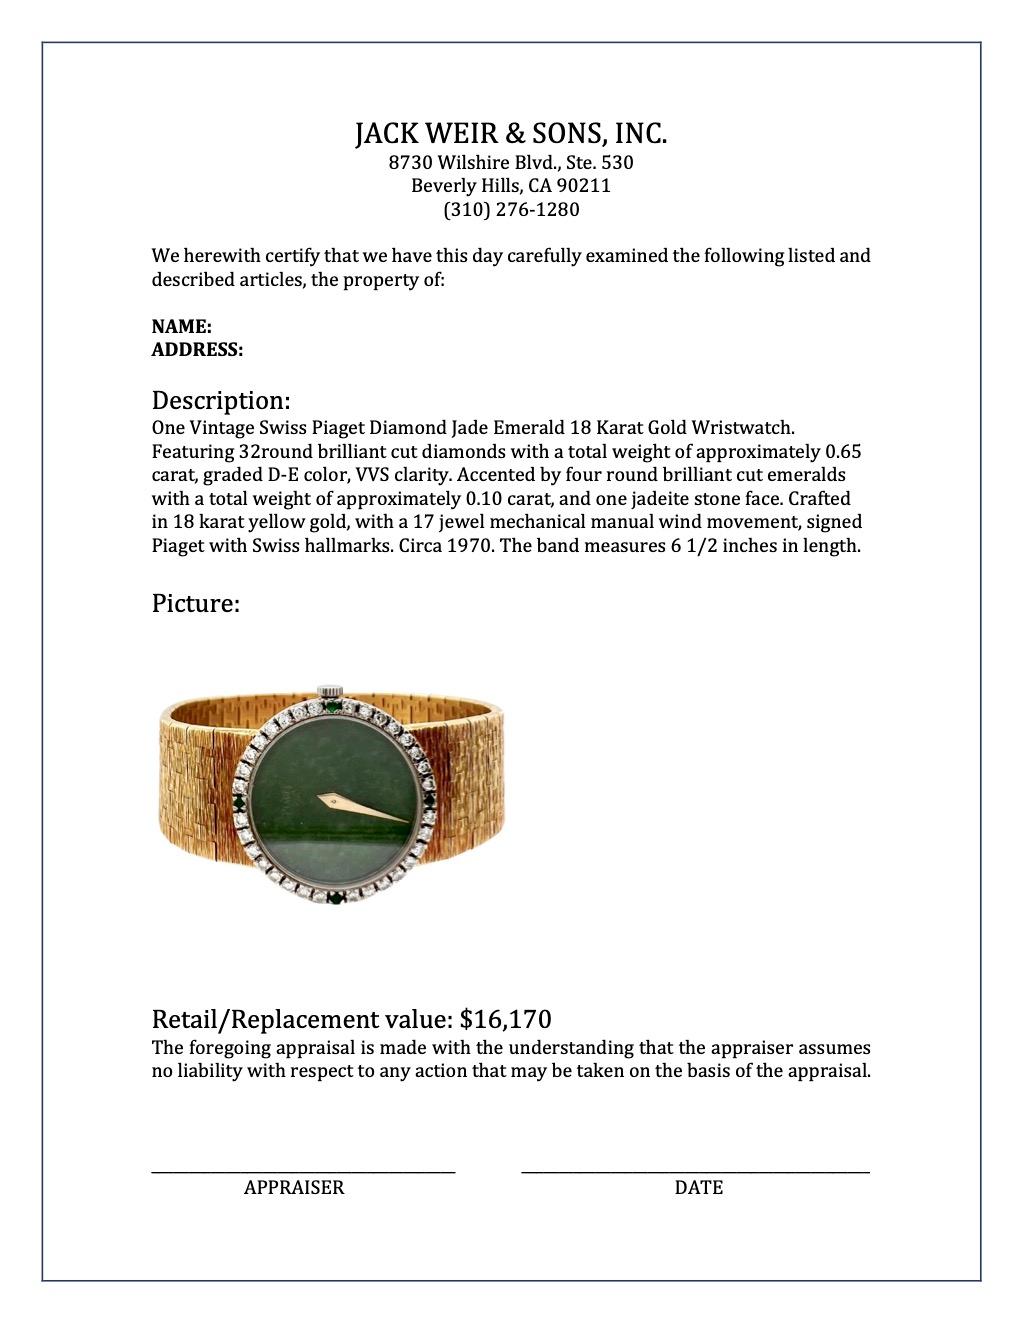 Vintage Swiss Piaget Diamond Jade Emerald 18 Karat Gold Wristwatch In Excellent Condition In Beverly Hills, CA